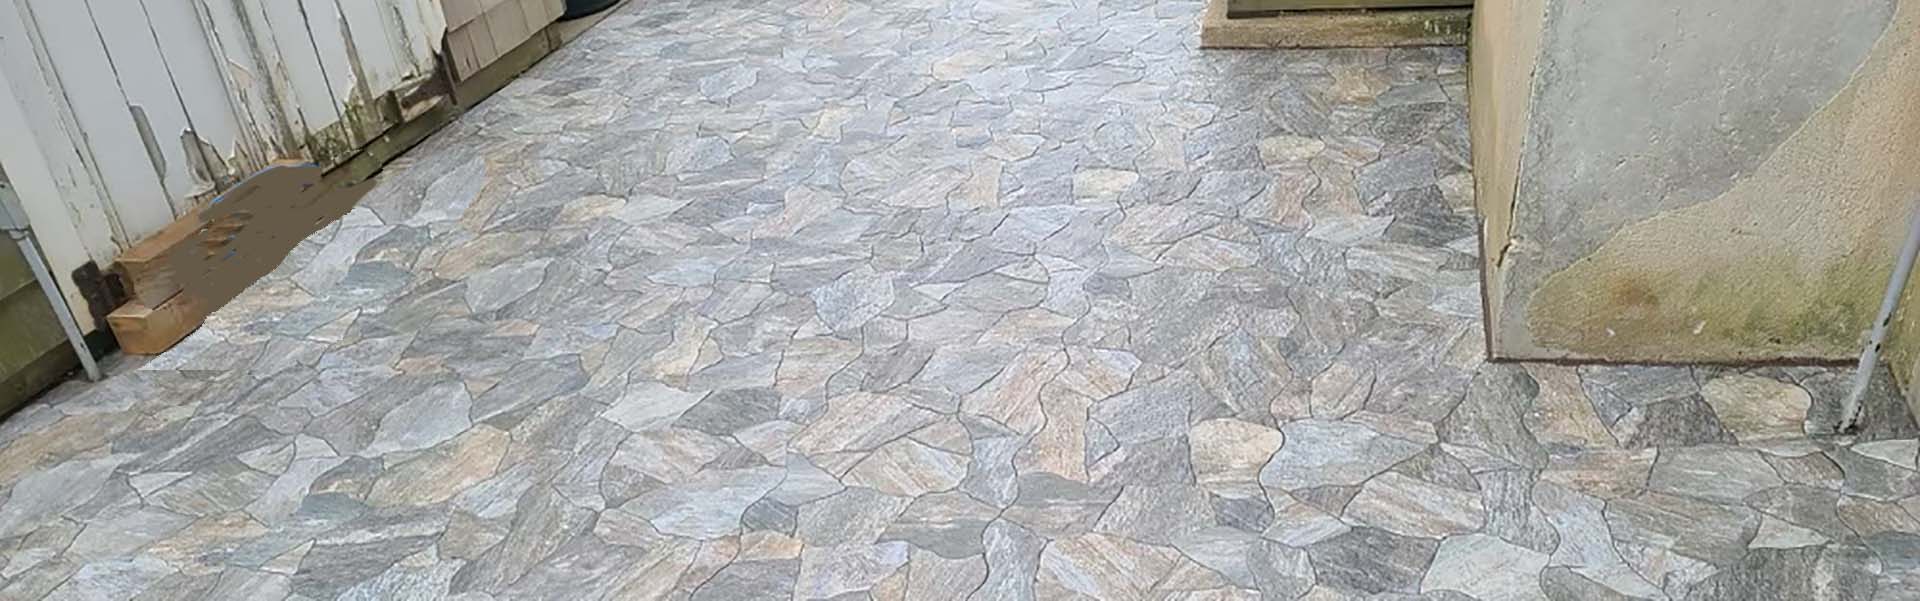 floor tiles installed